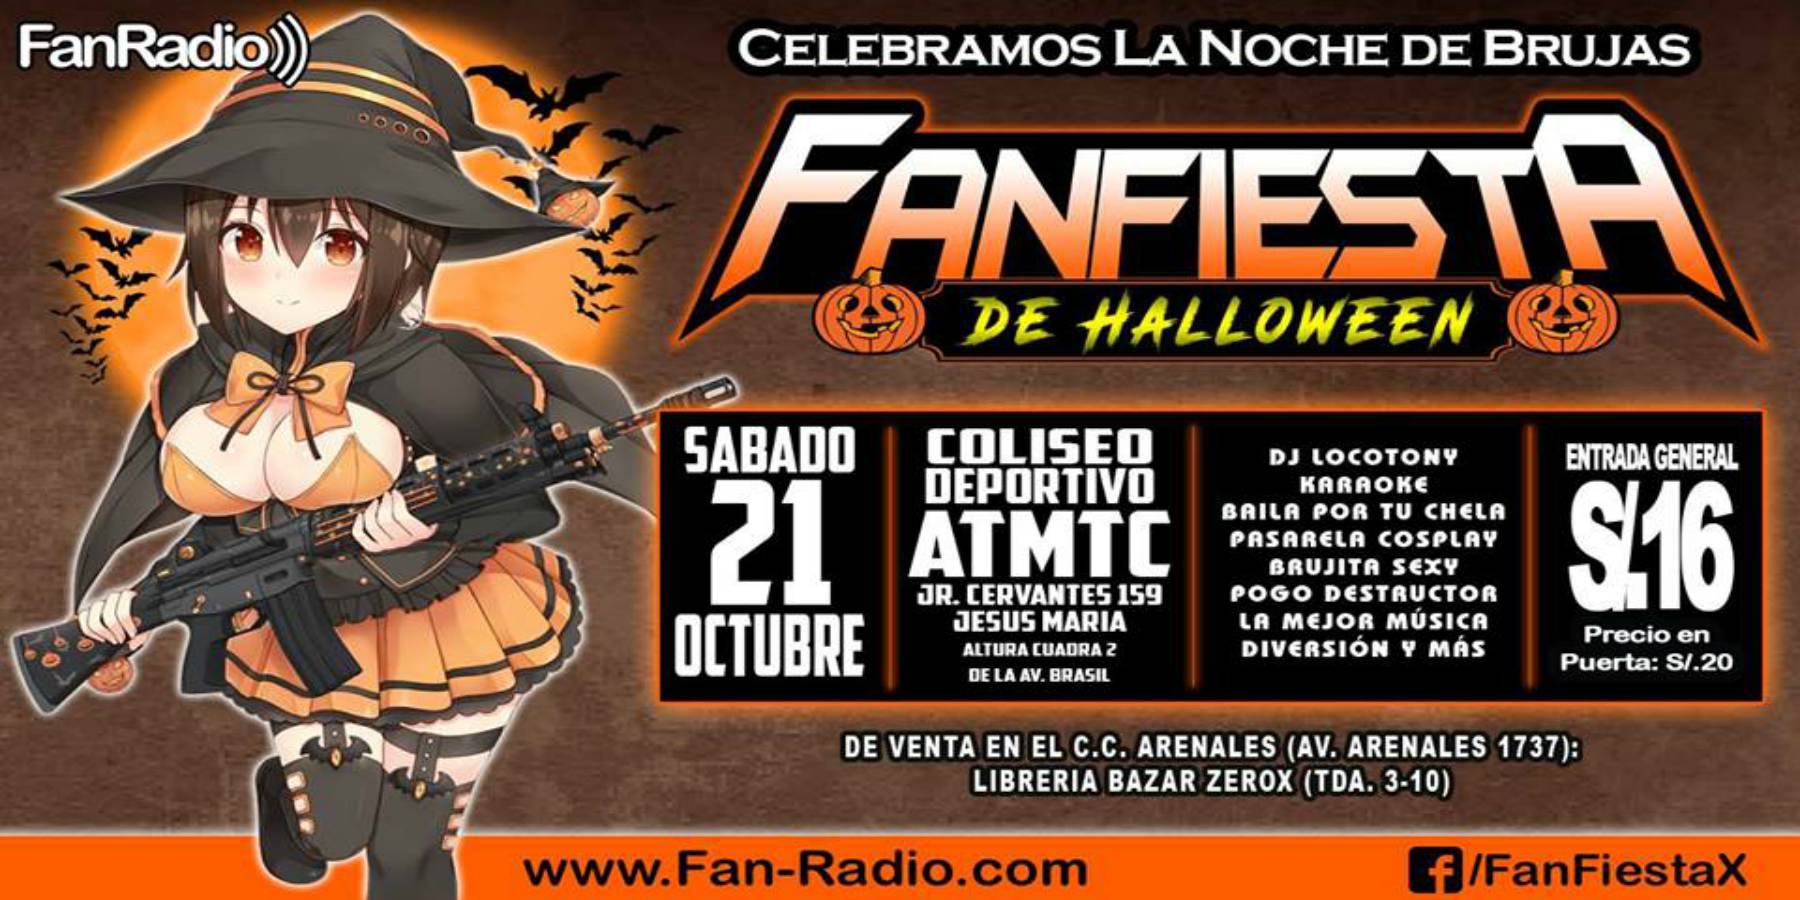 FanFiesta de Halloween 2017 | Celebra el Censo